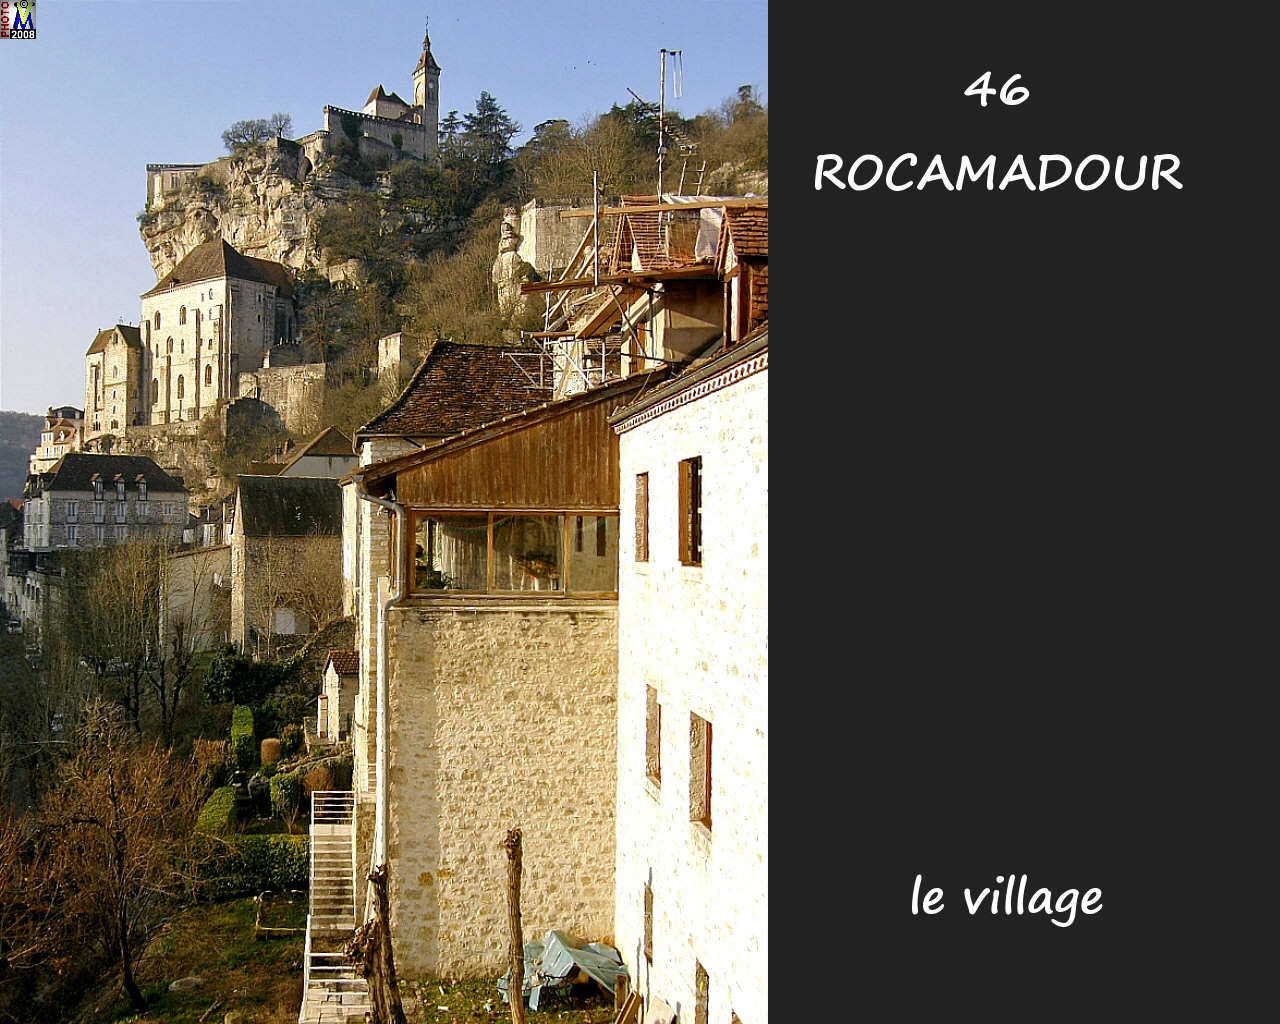 46ROCAMADOUR_village_102.jpg